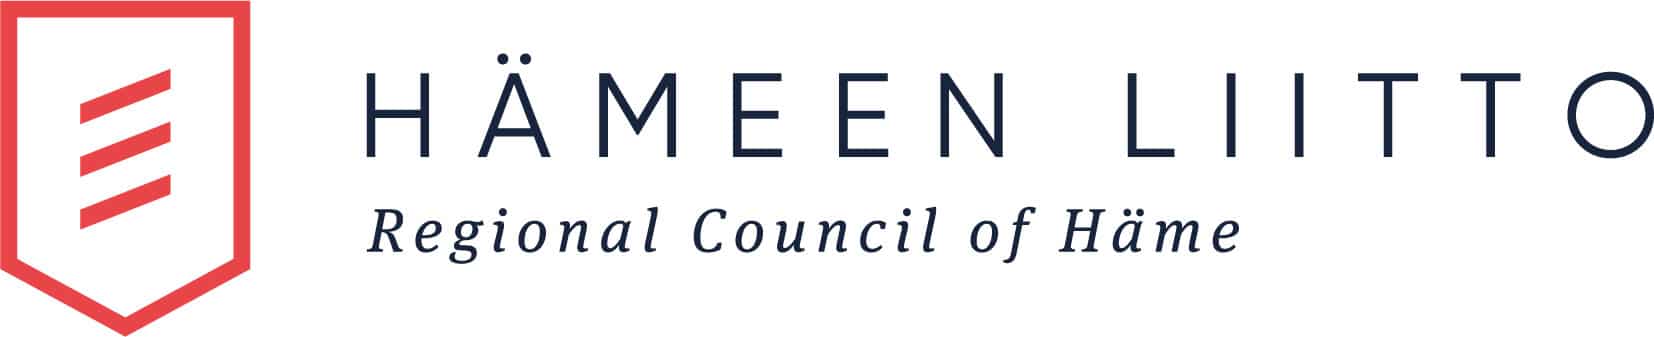 2020-02-hameenliitto-logo-rgb-vaaka